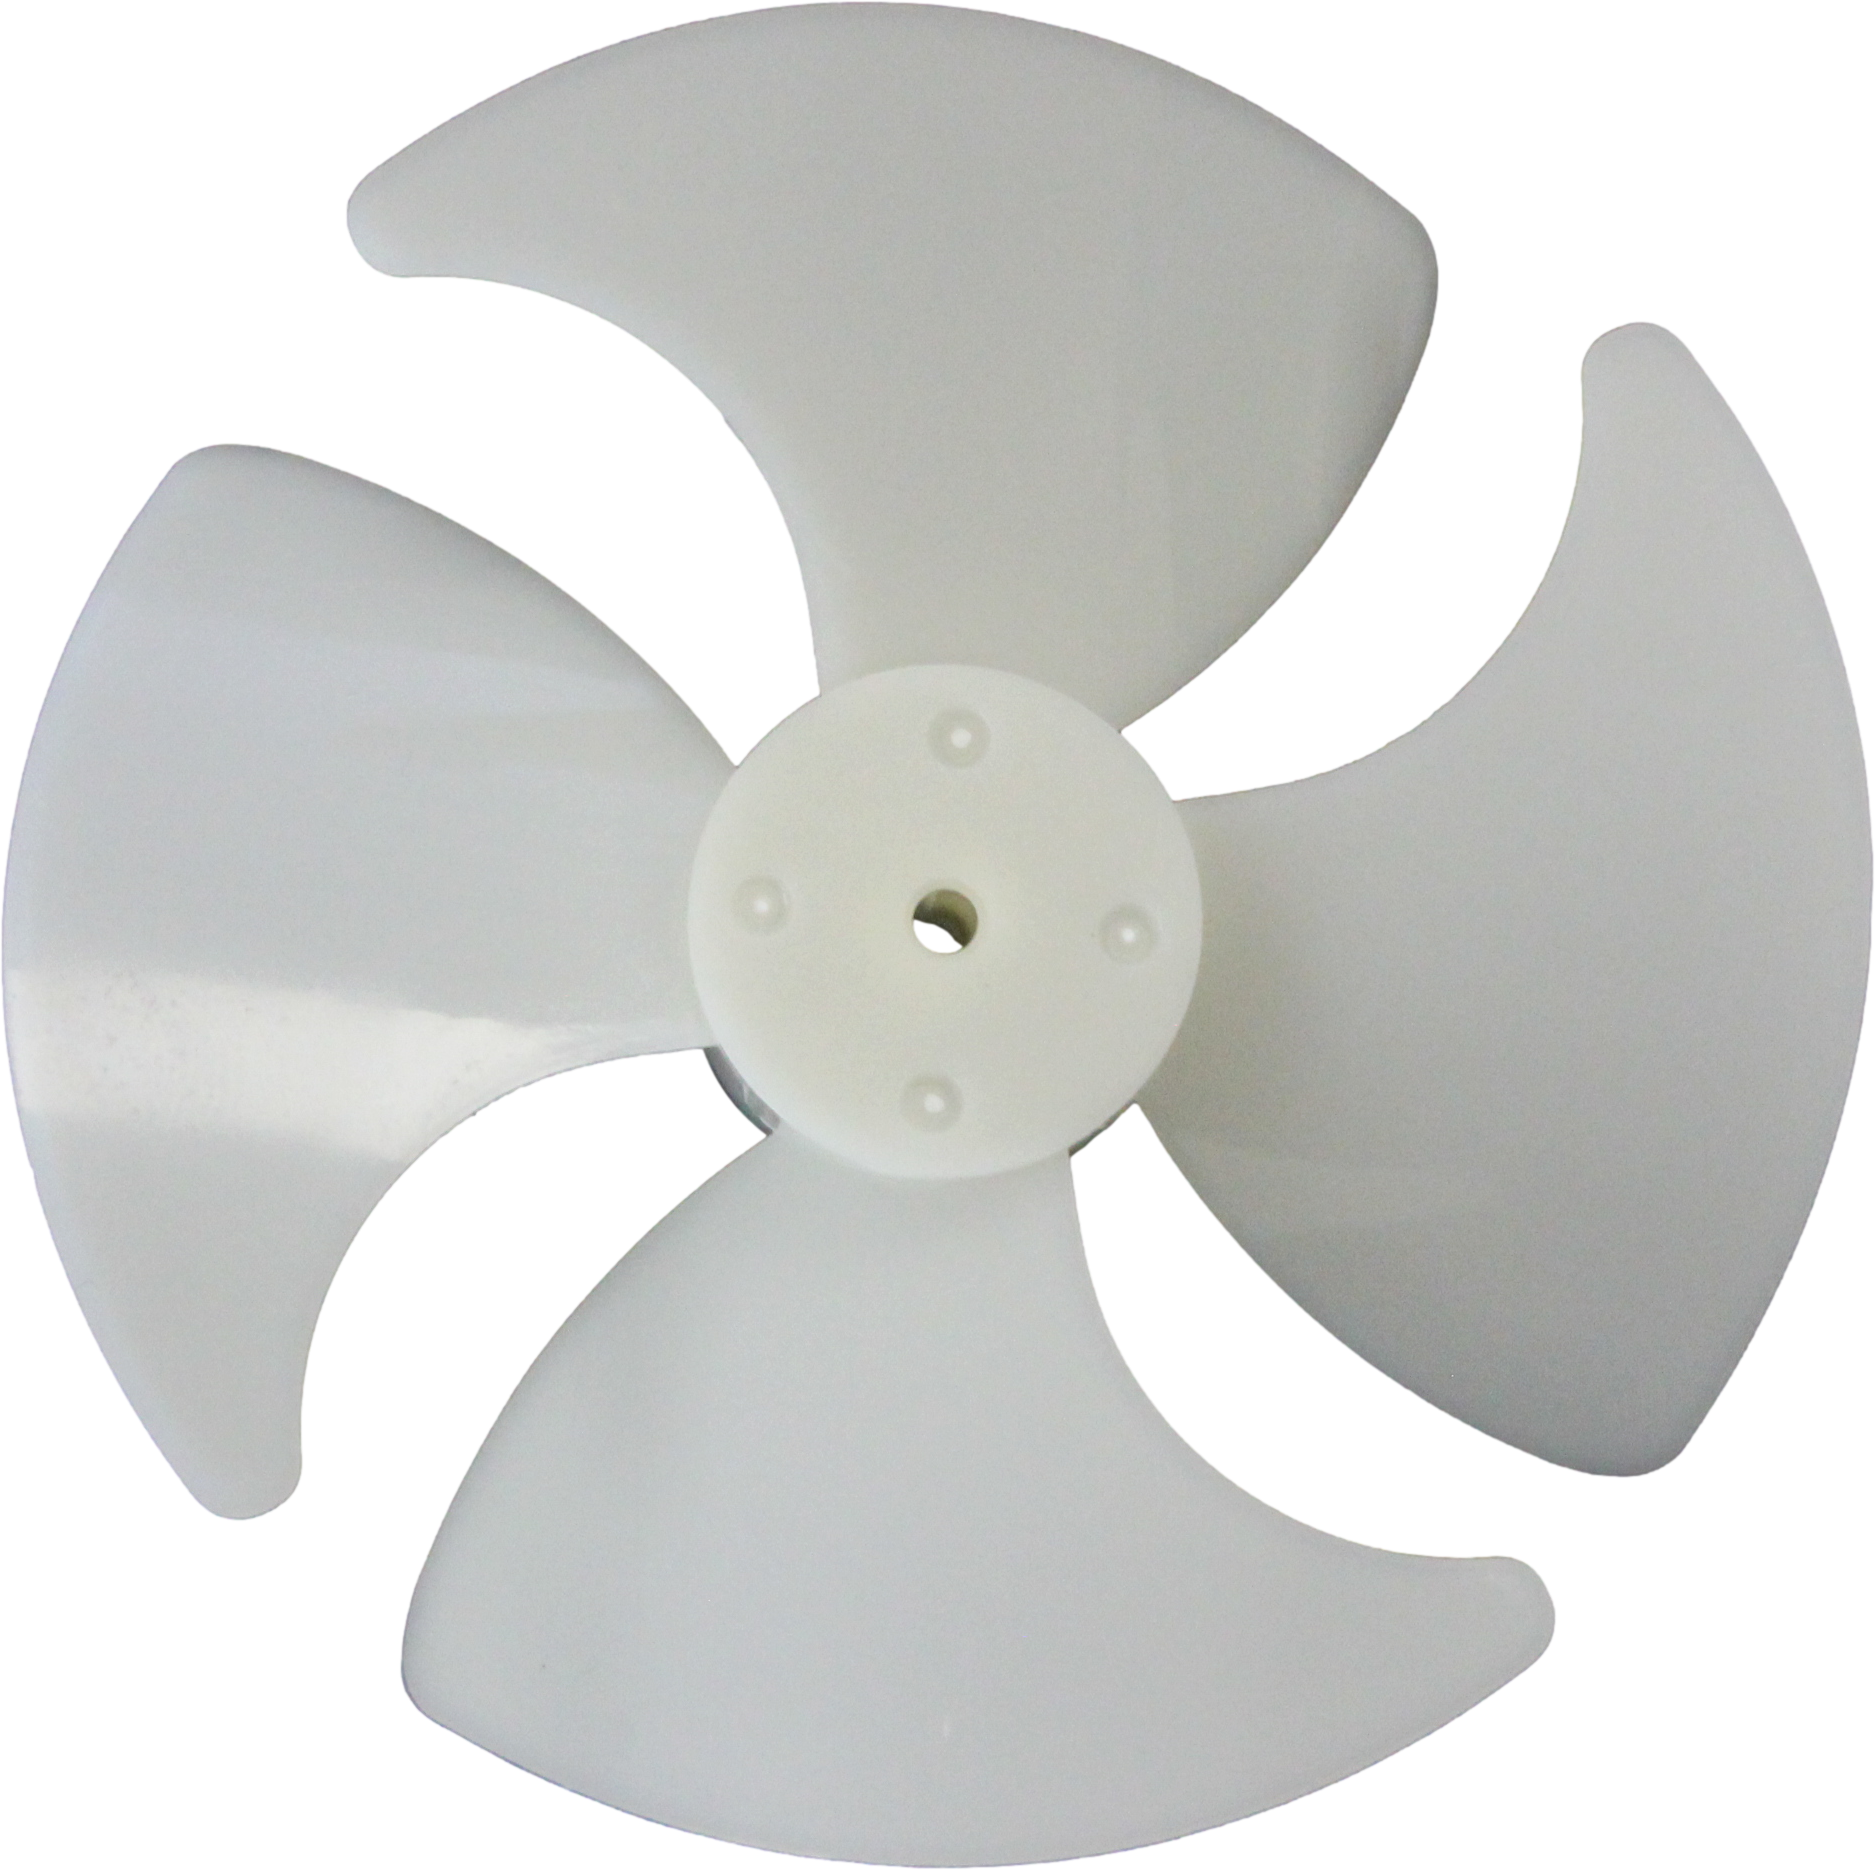 Крыльчатка вентилятора D 90 мм для холодильника Stinol, Indesit, Ariston (применяются для обдува испарителя холодильной камеры)